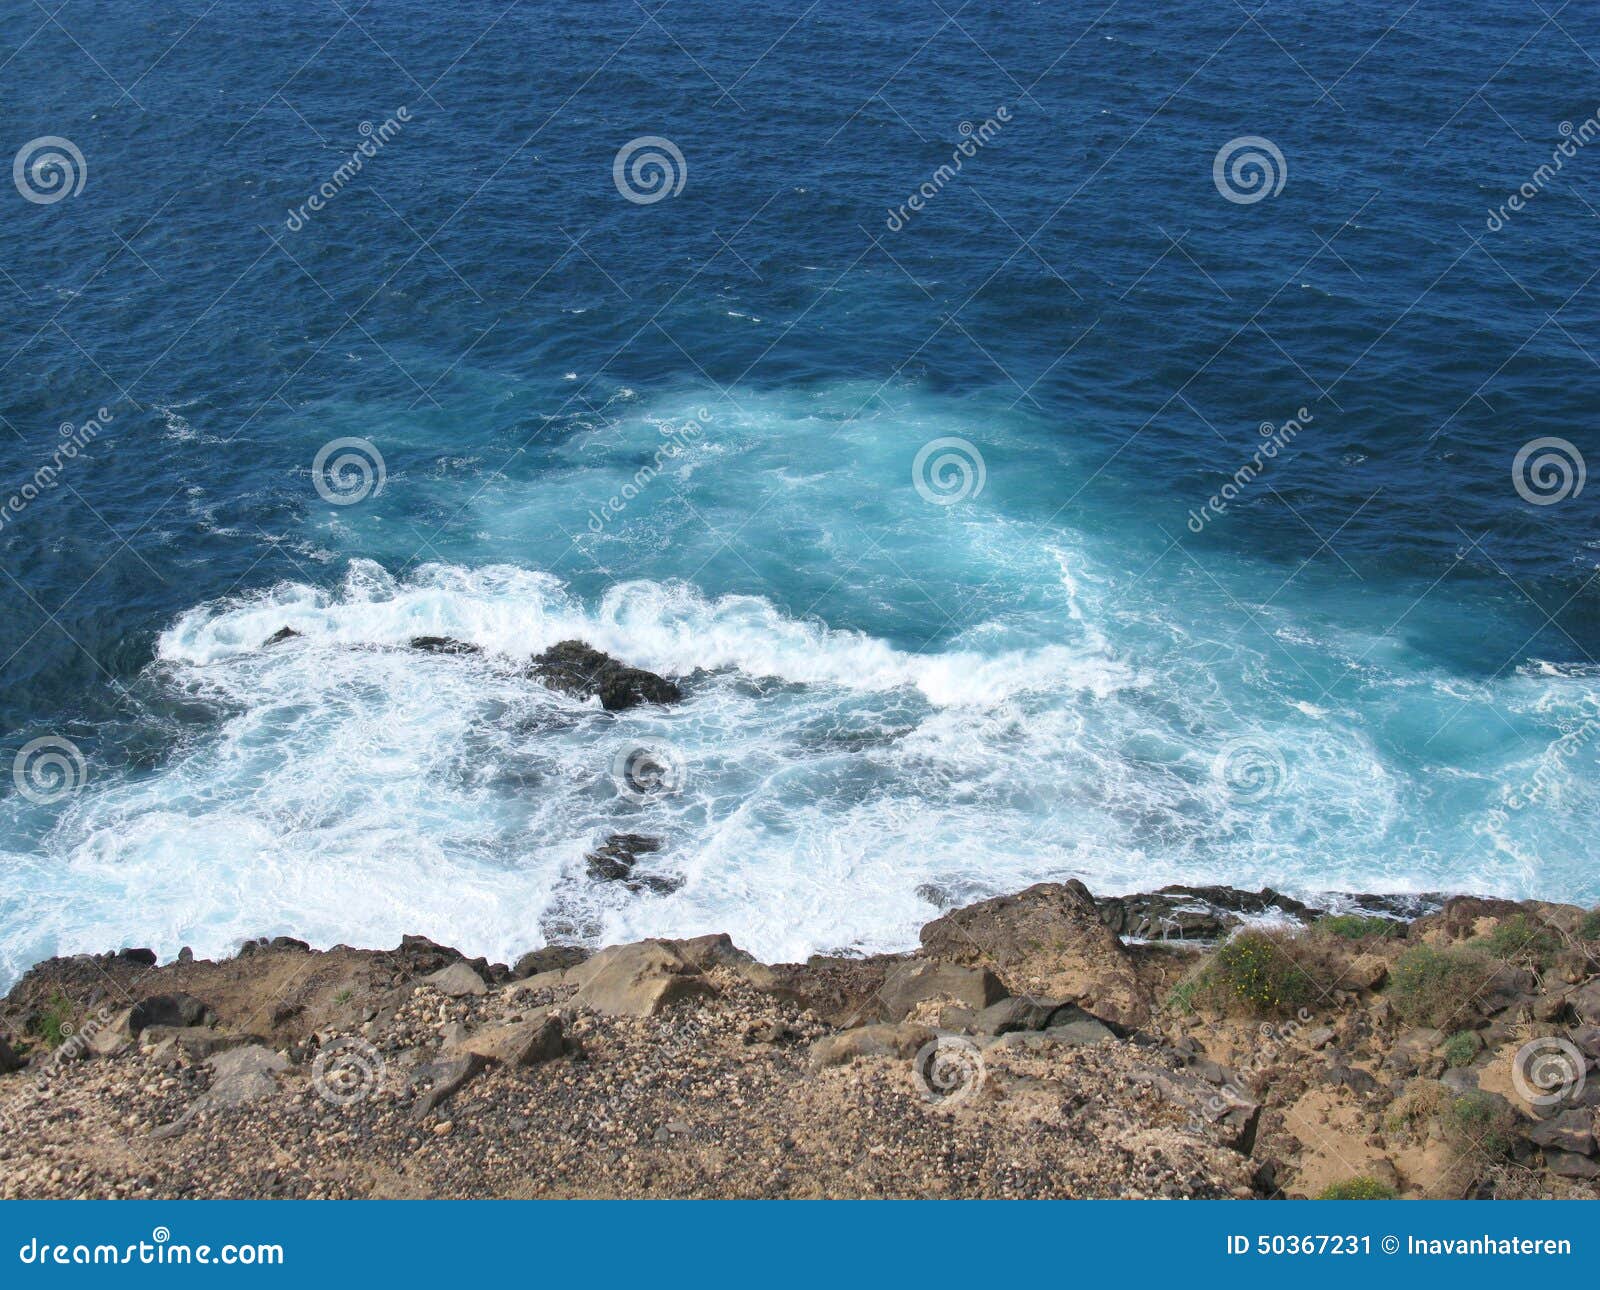 the coast of the atlantic ocean of fuerteventura